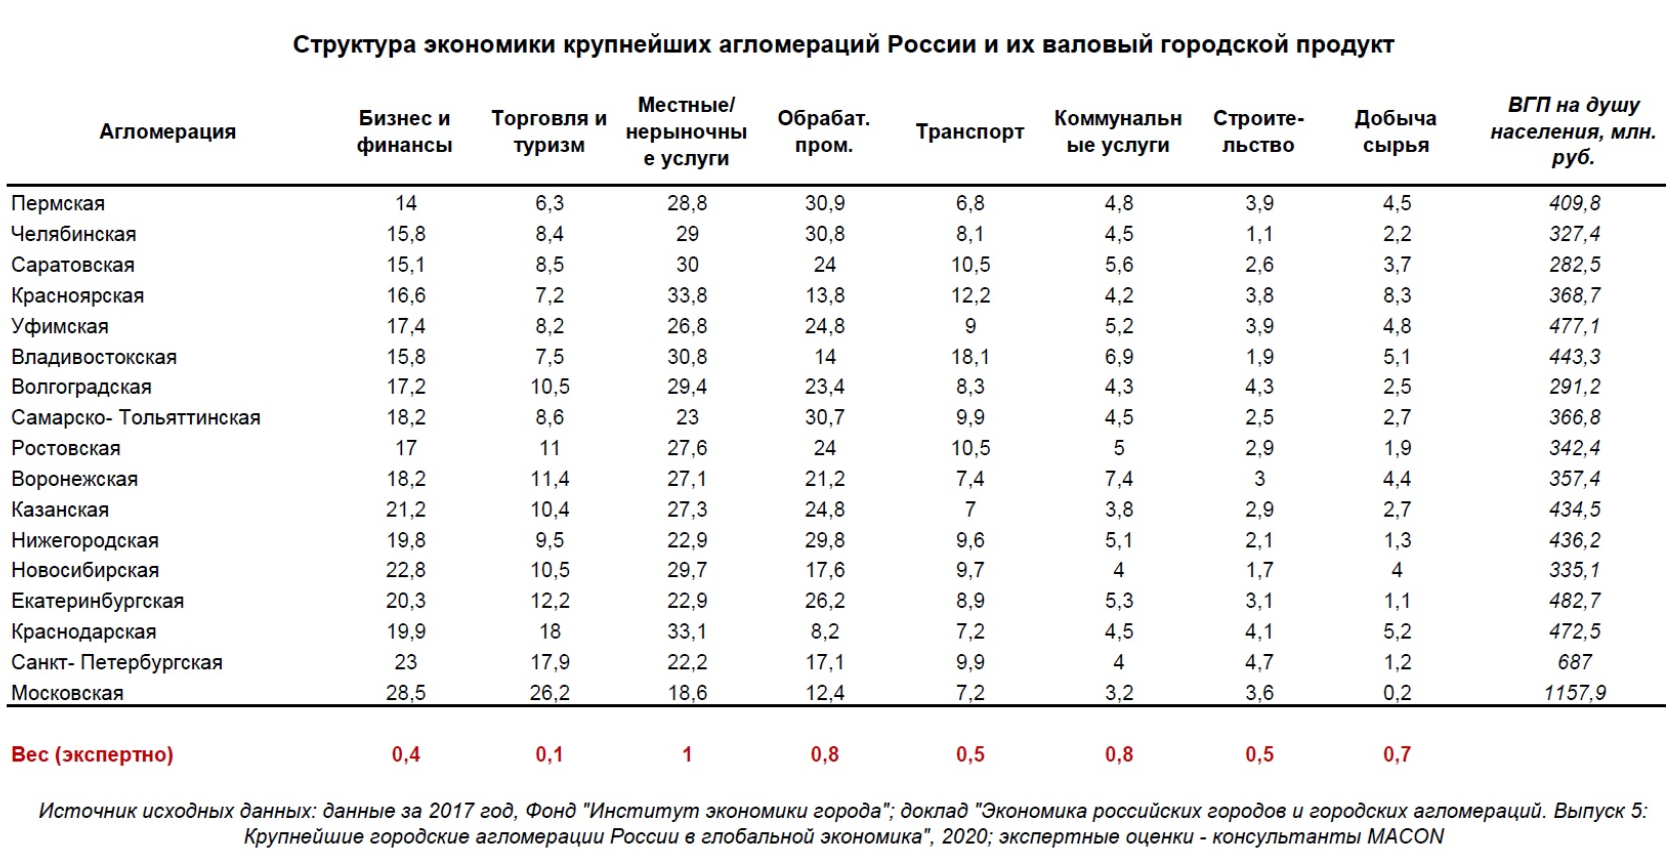 MACON: Пермская агломерация – самая устойчивая в РФ в условиях эпидемии